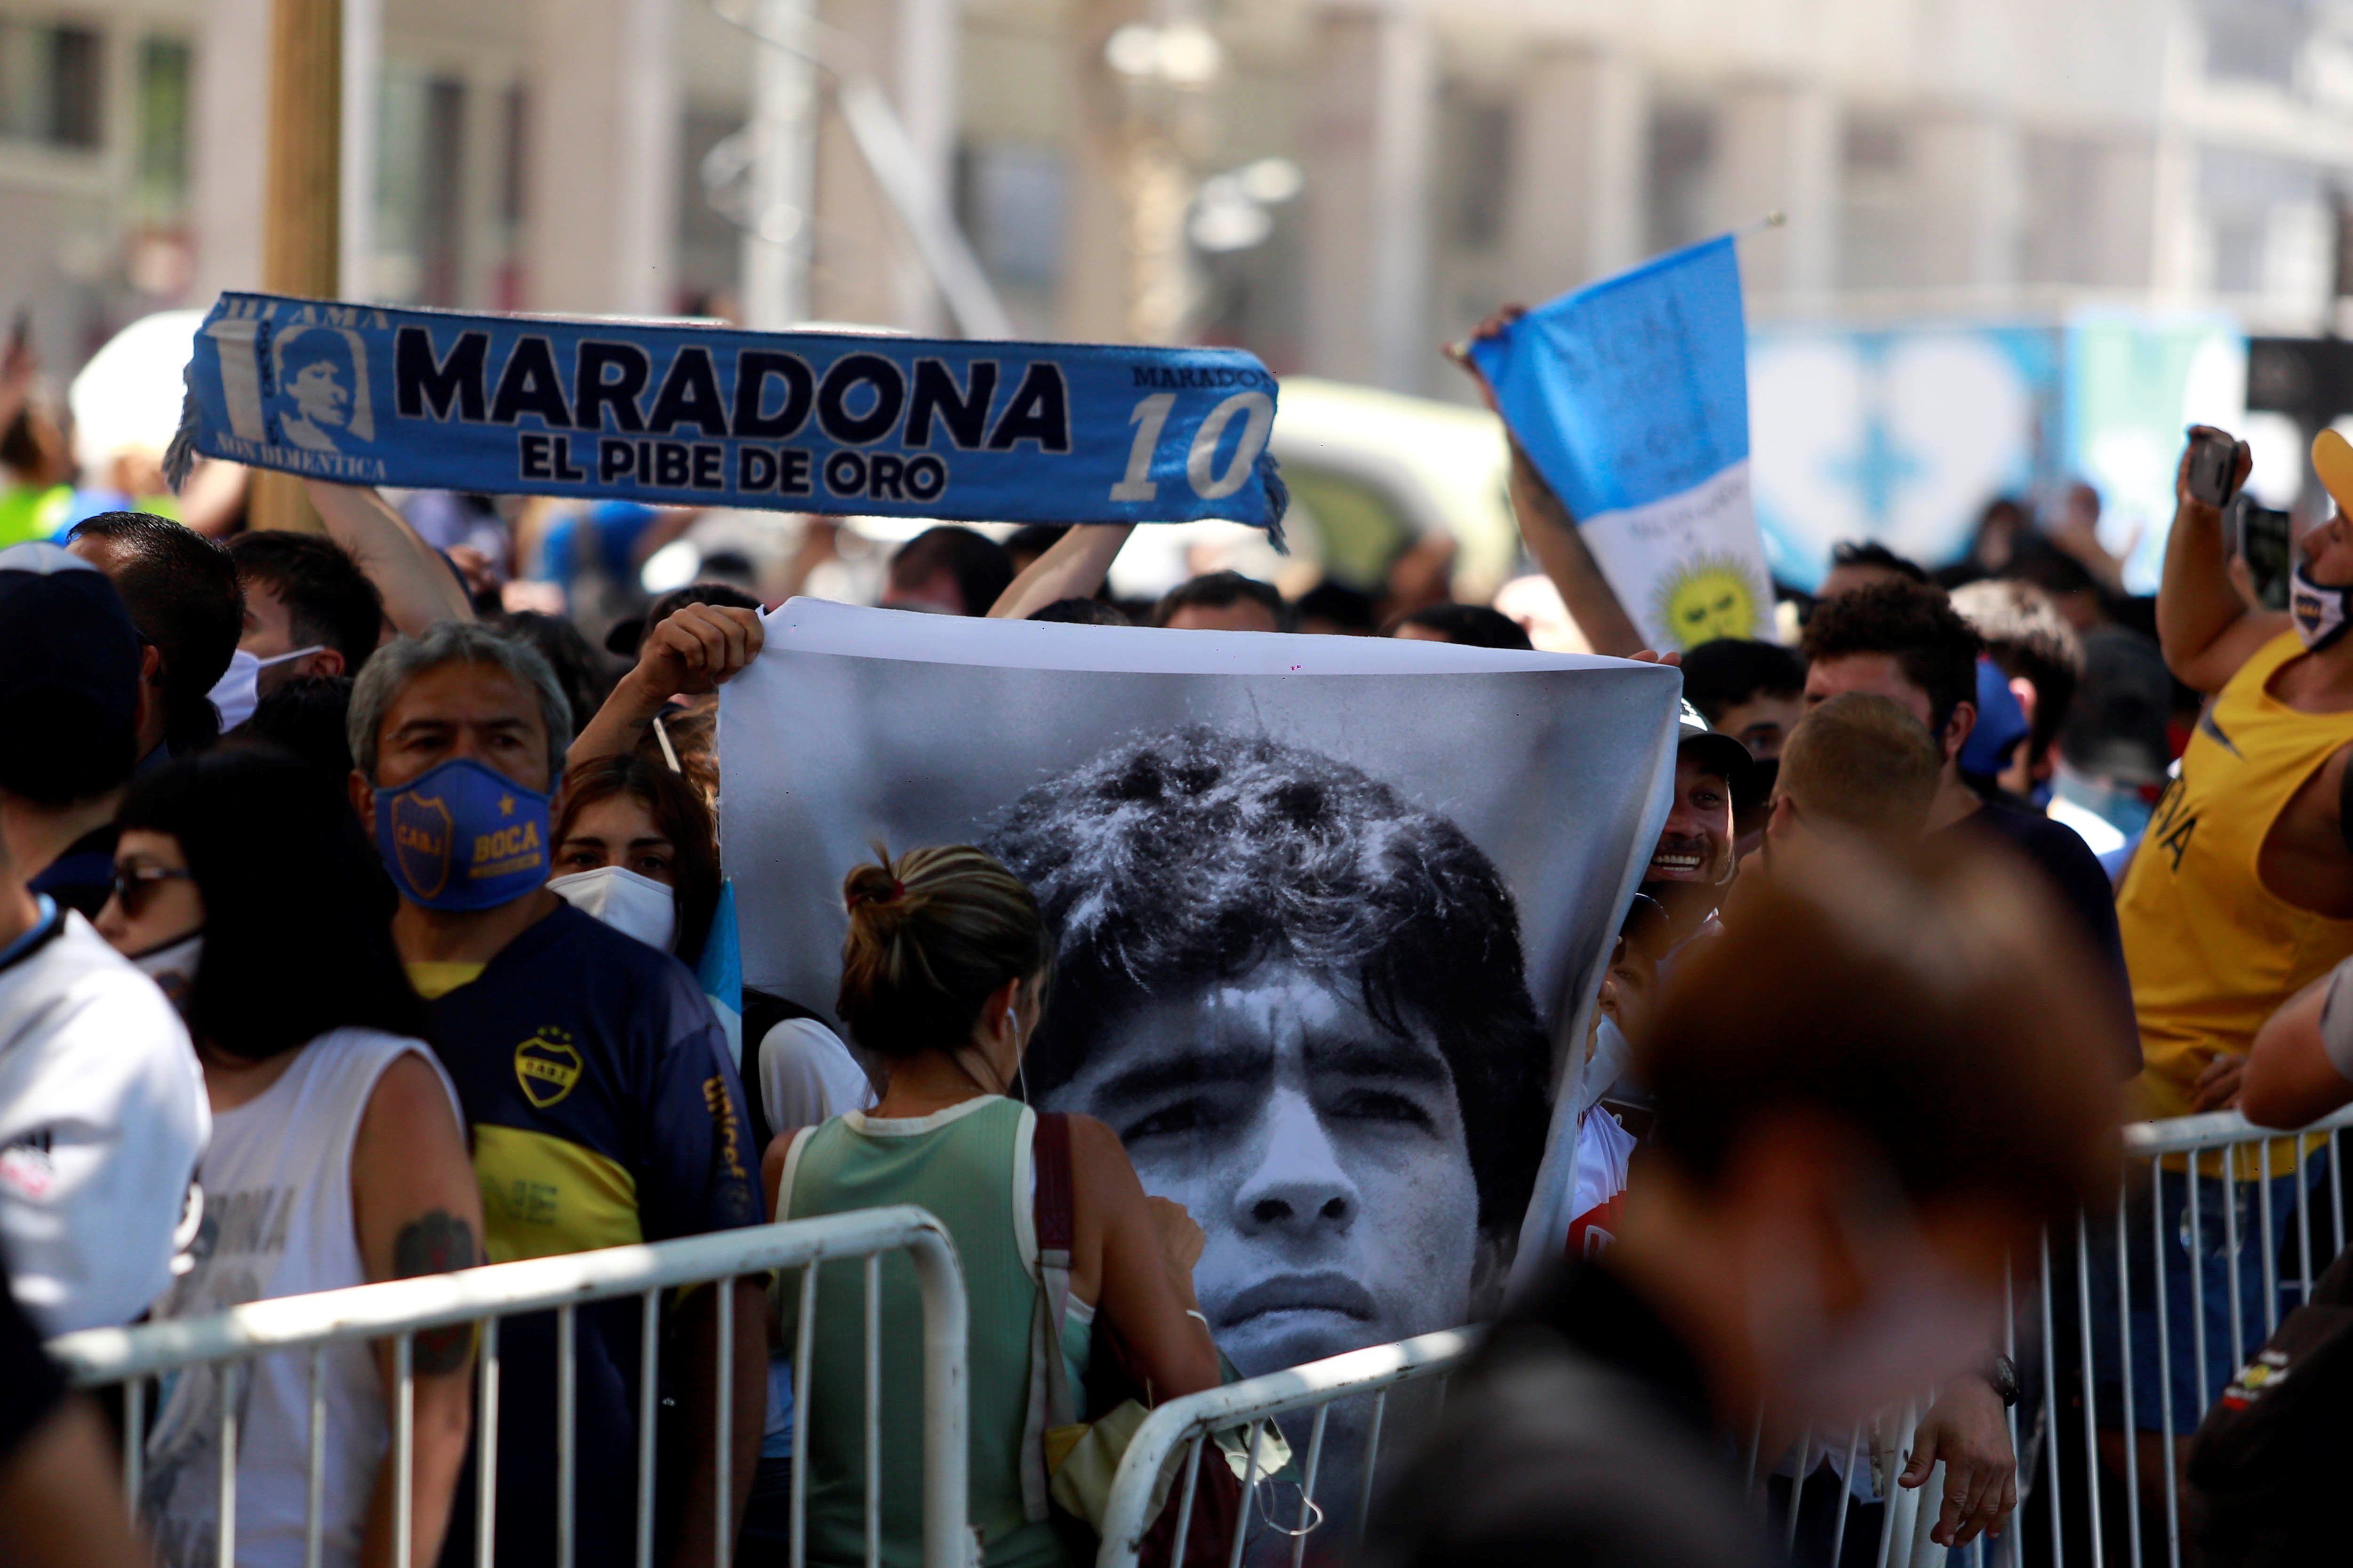 Acusen Maradona de l'augment de contagis i una de les filles demana respecte